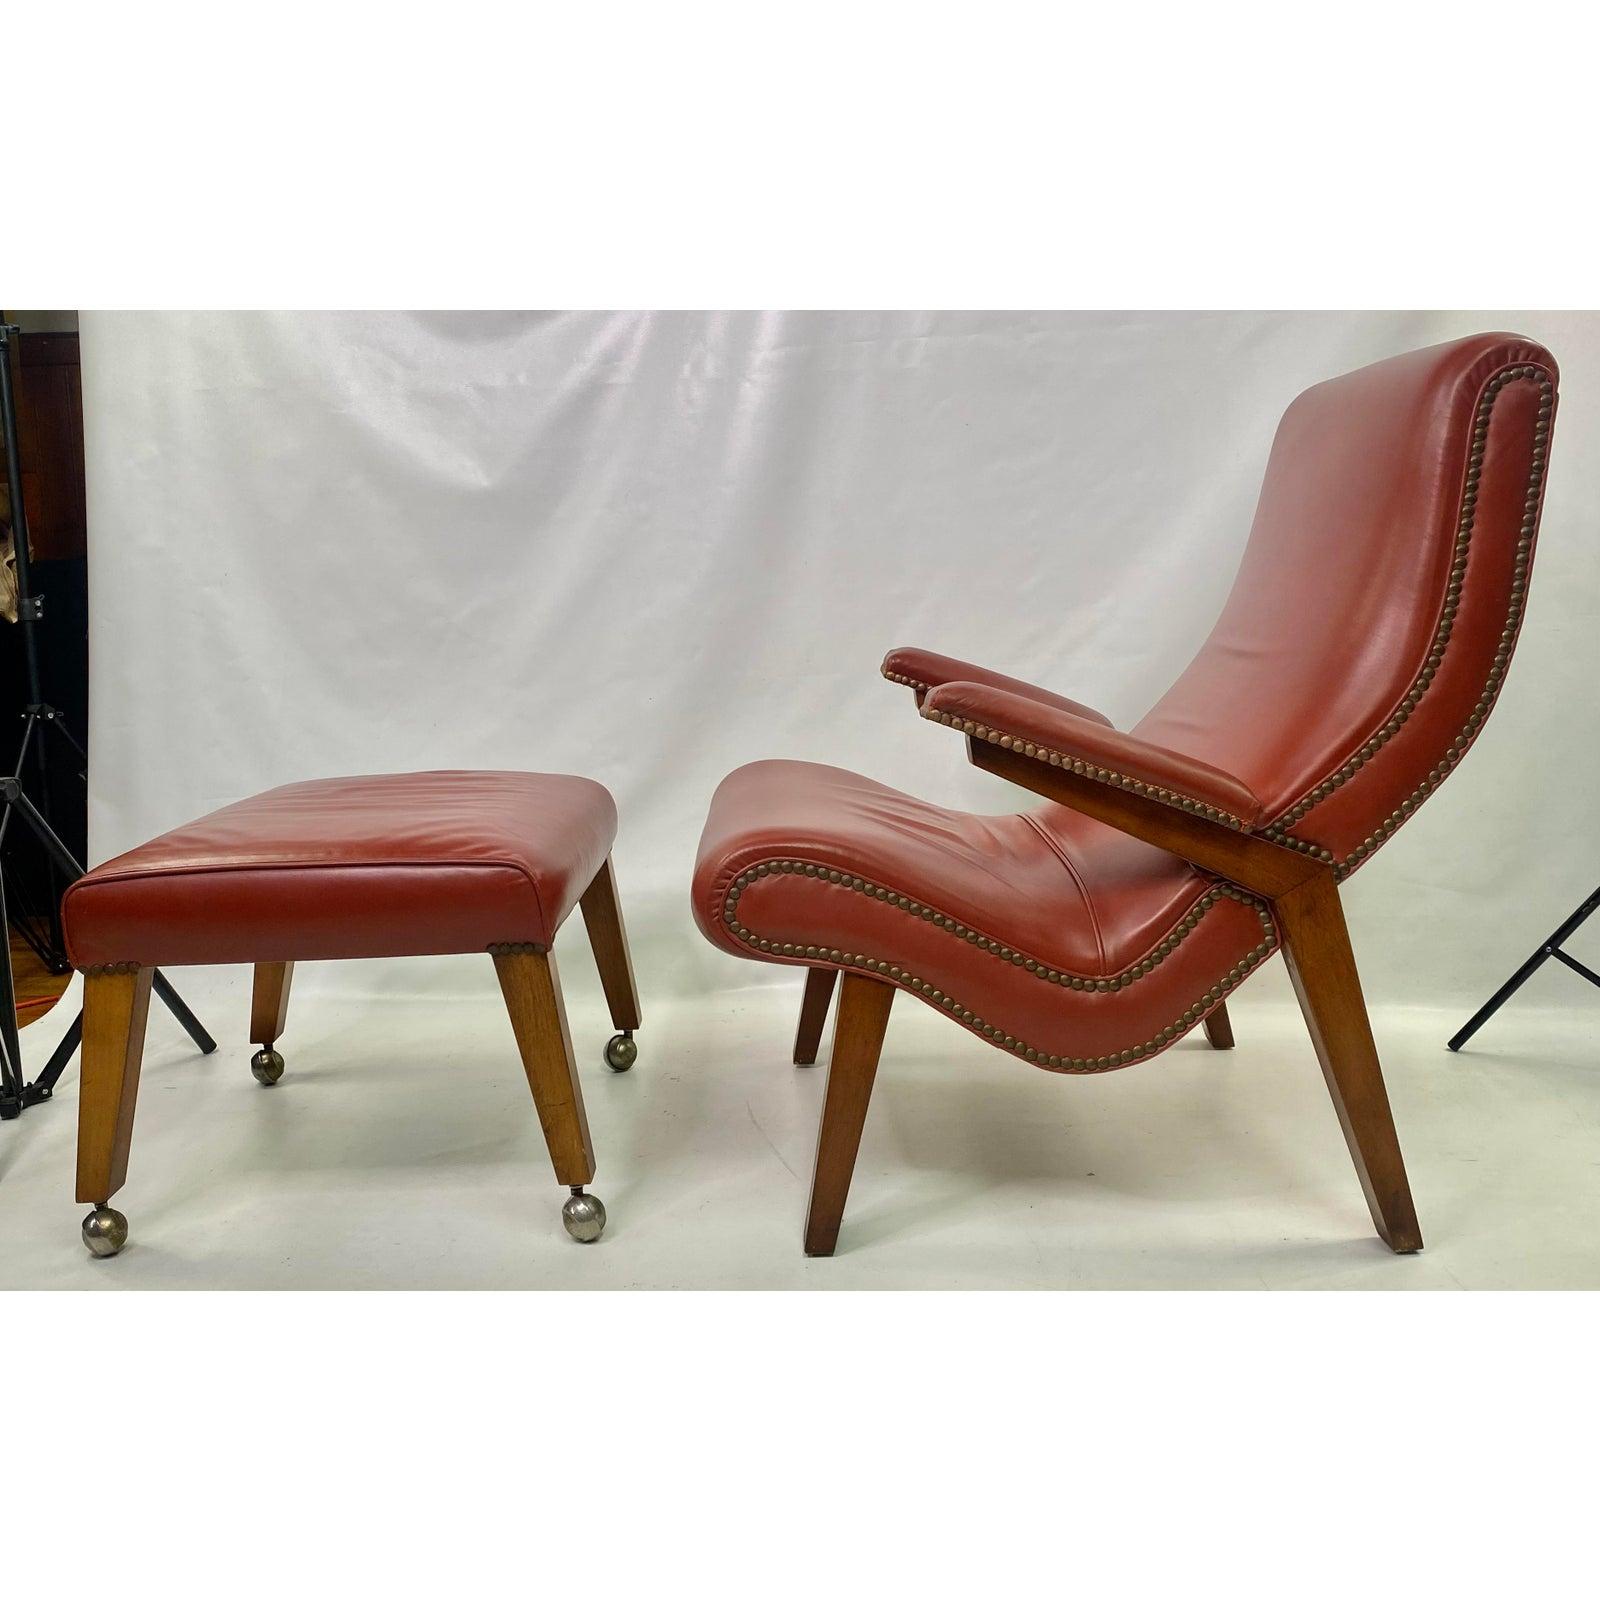 1950s Scandinavian Modern Lounge Chair with Ottoman 4